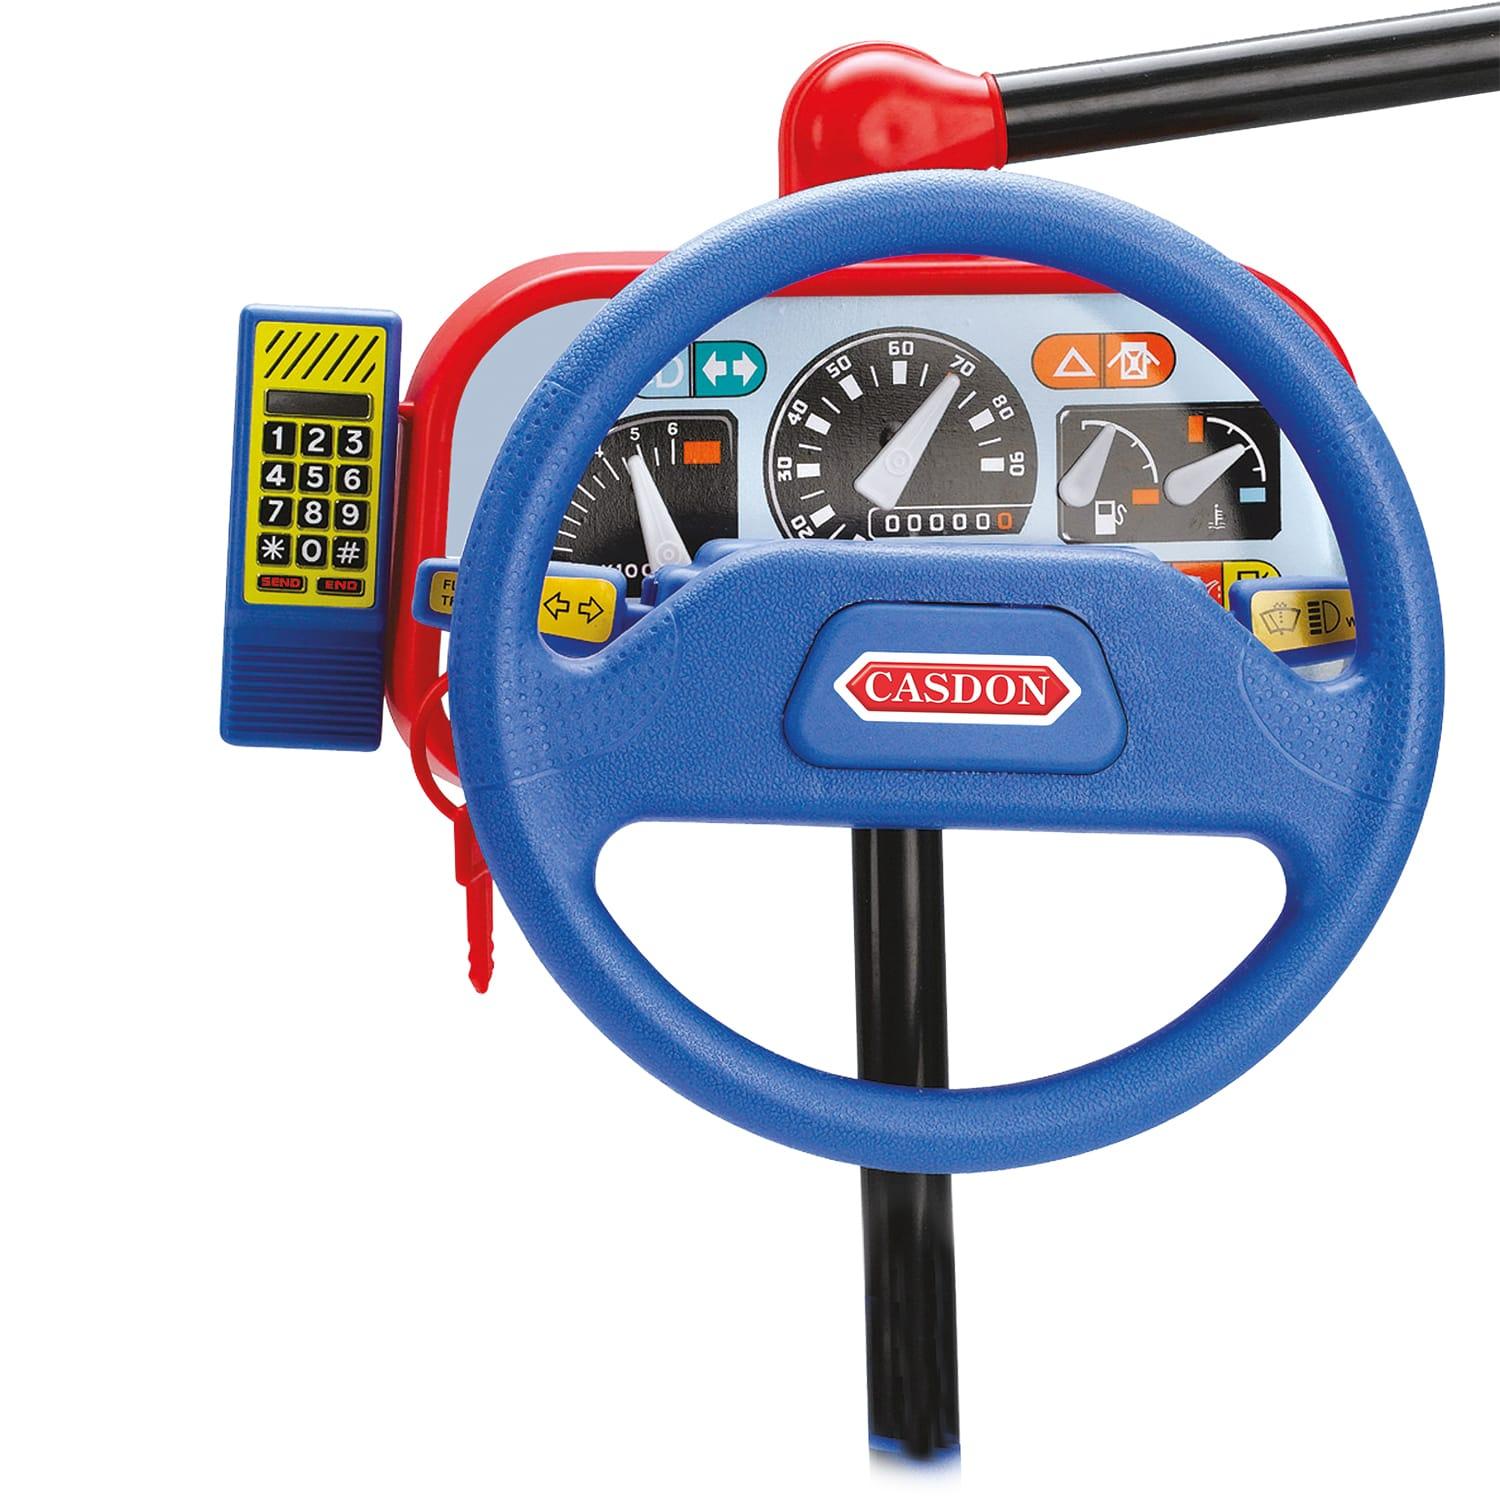 toy steering wheel